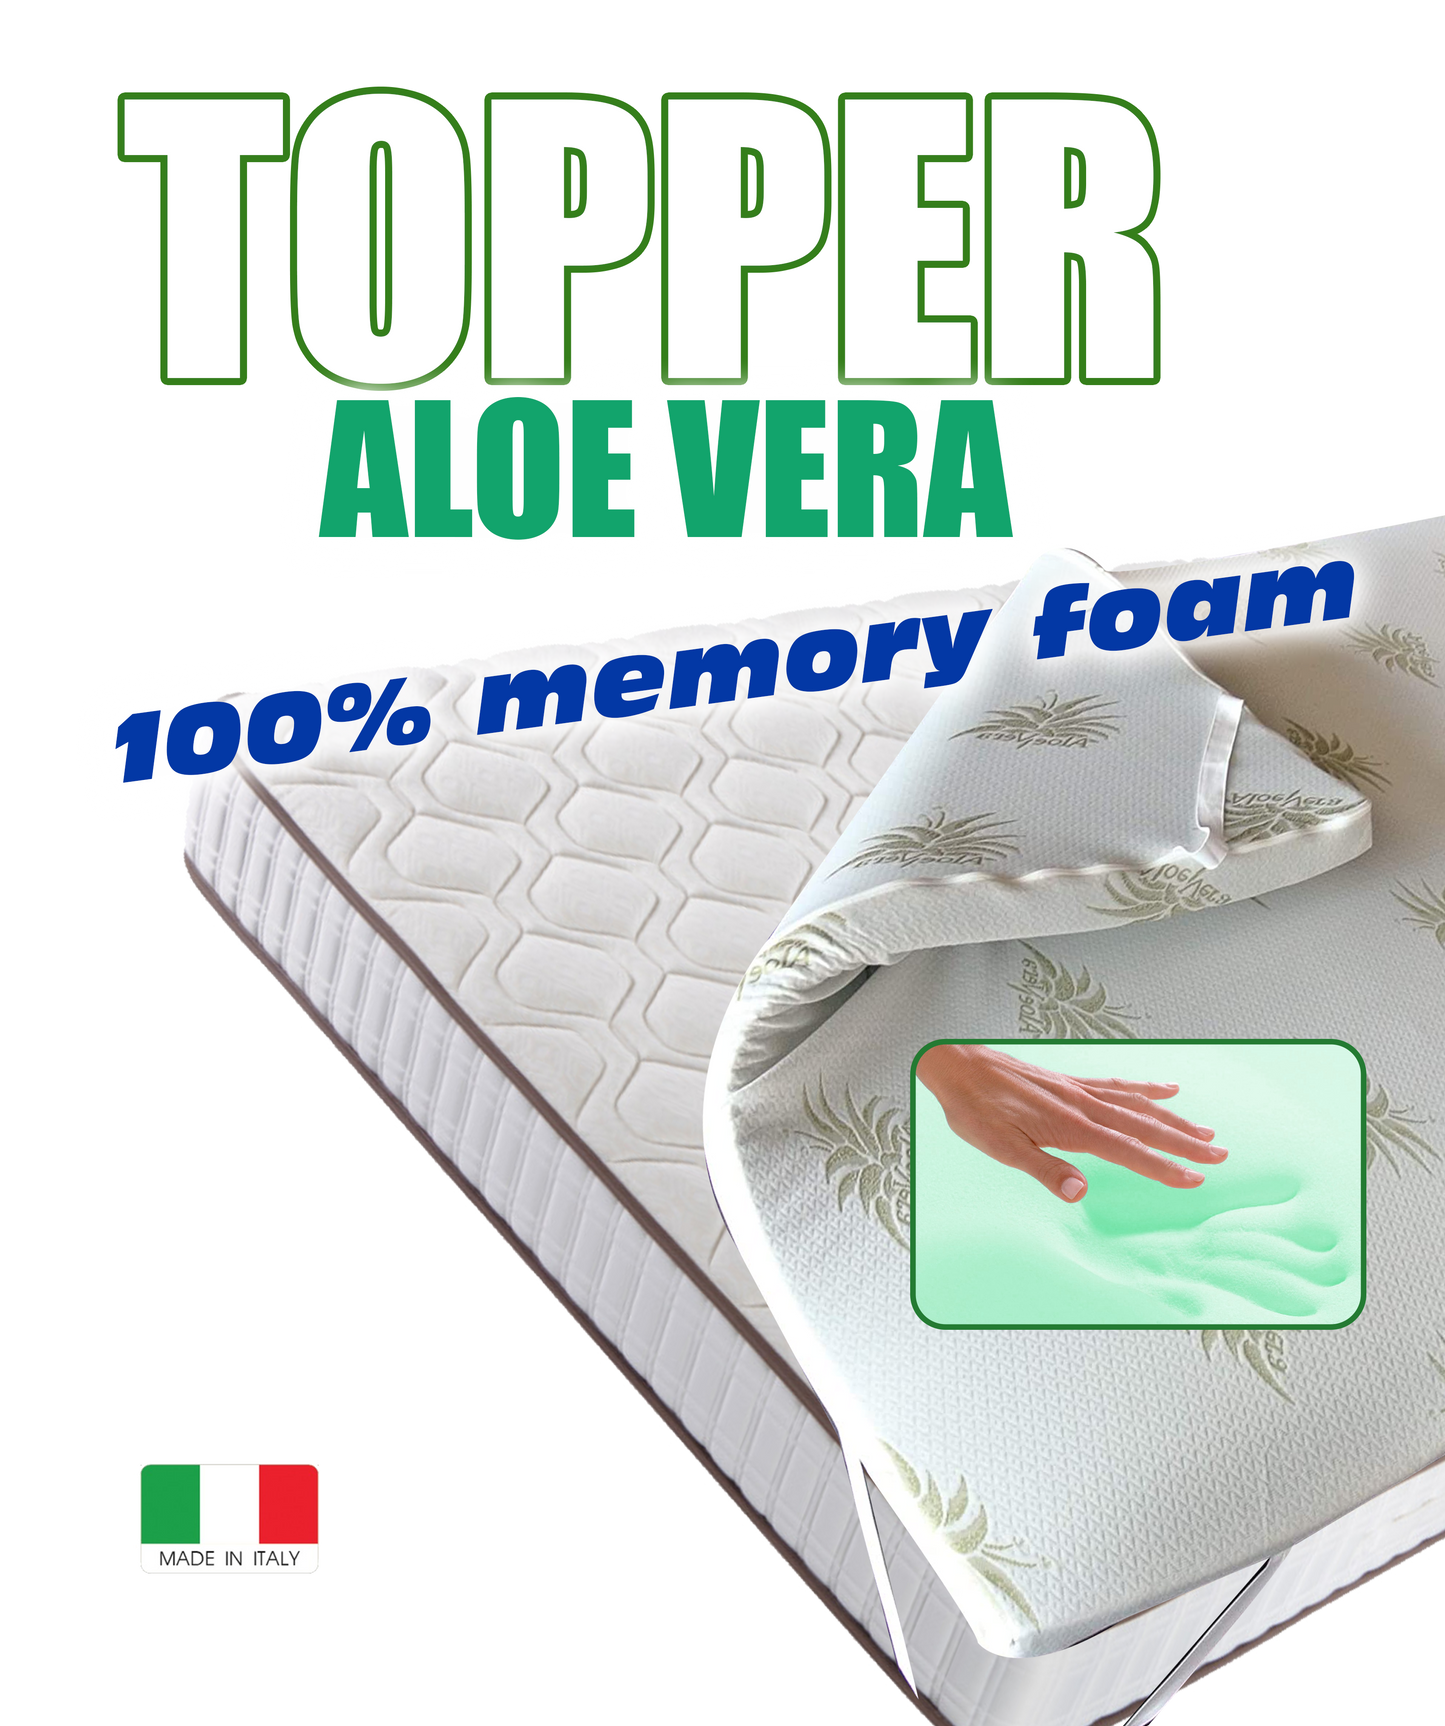 Topper in Memory Foam - SANAFOAM - I migliori prodotti Made in Italy da Fiera di Monza Shop - Solo 89€! Acquista subito su Fiera di Monza Shop!